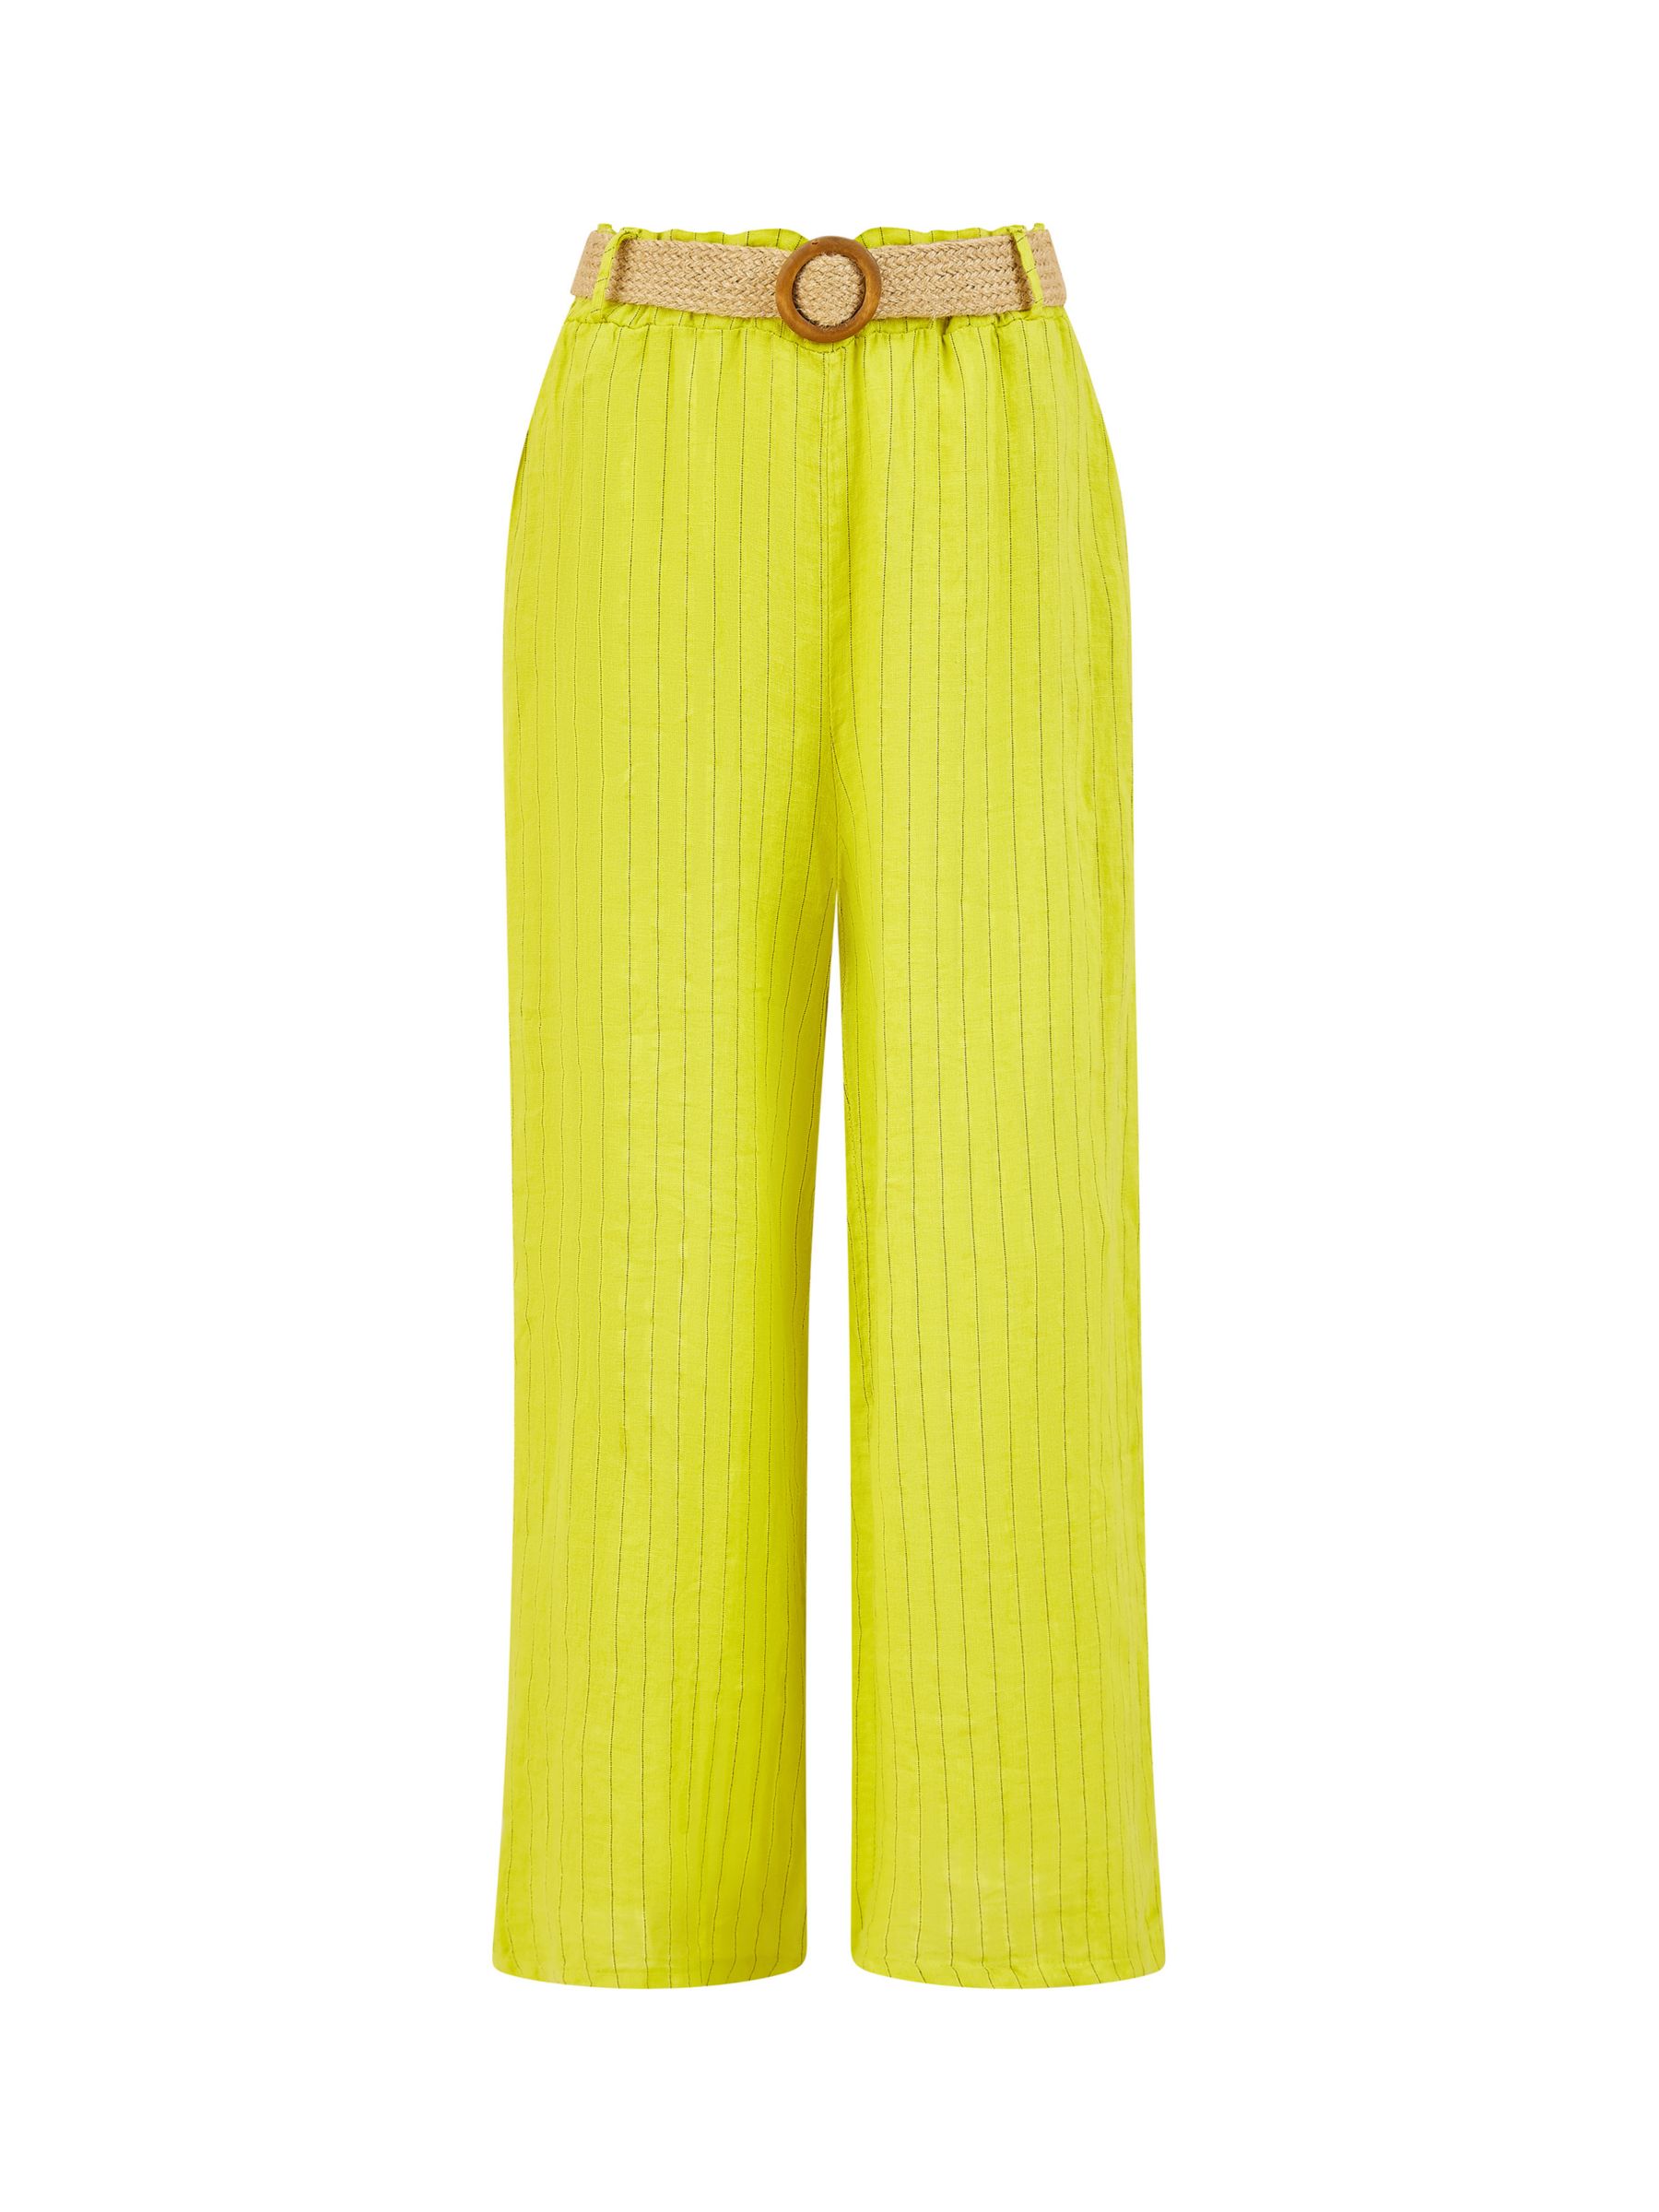 Yumi Italian Linen Striped Wide Leg Trousers & Belt, Lime, S